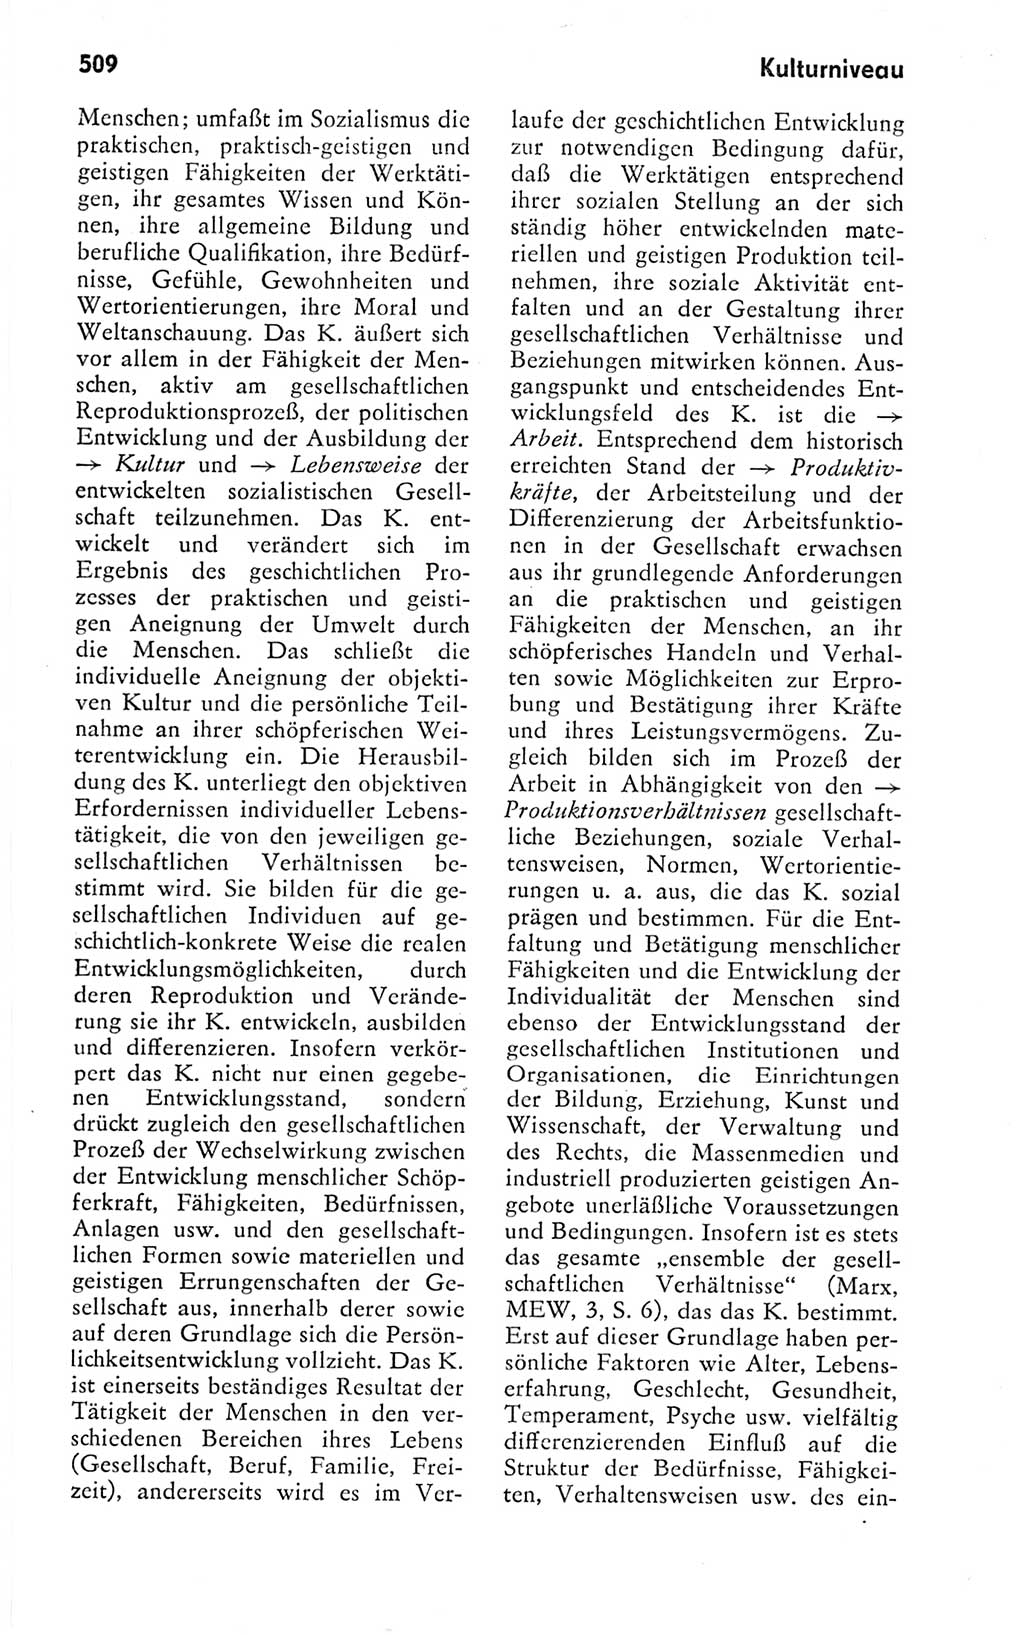 Kleines politisches Wörterbuch [Deutsche Demokratische Republik (DDR)] 1978, Seite 509 (Kl. pol. Wb. DDR 1978, S. 509)